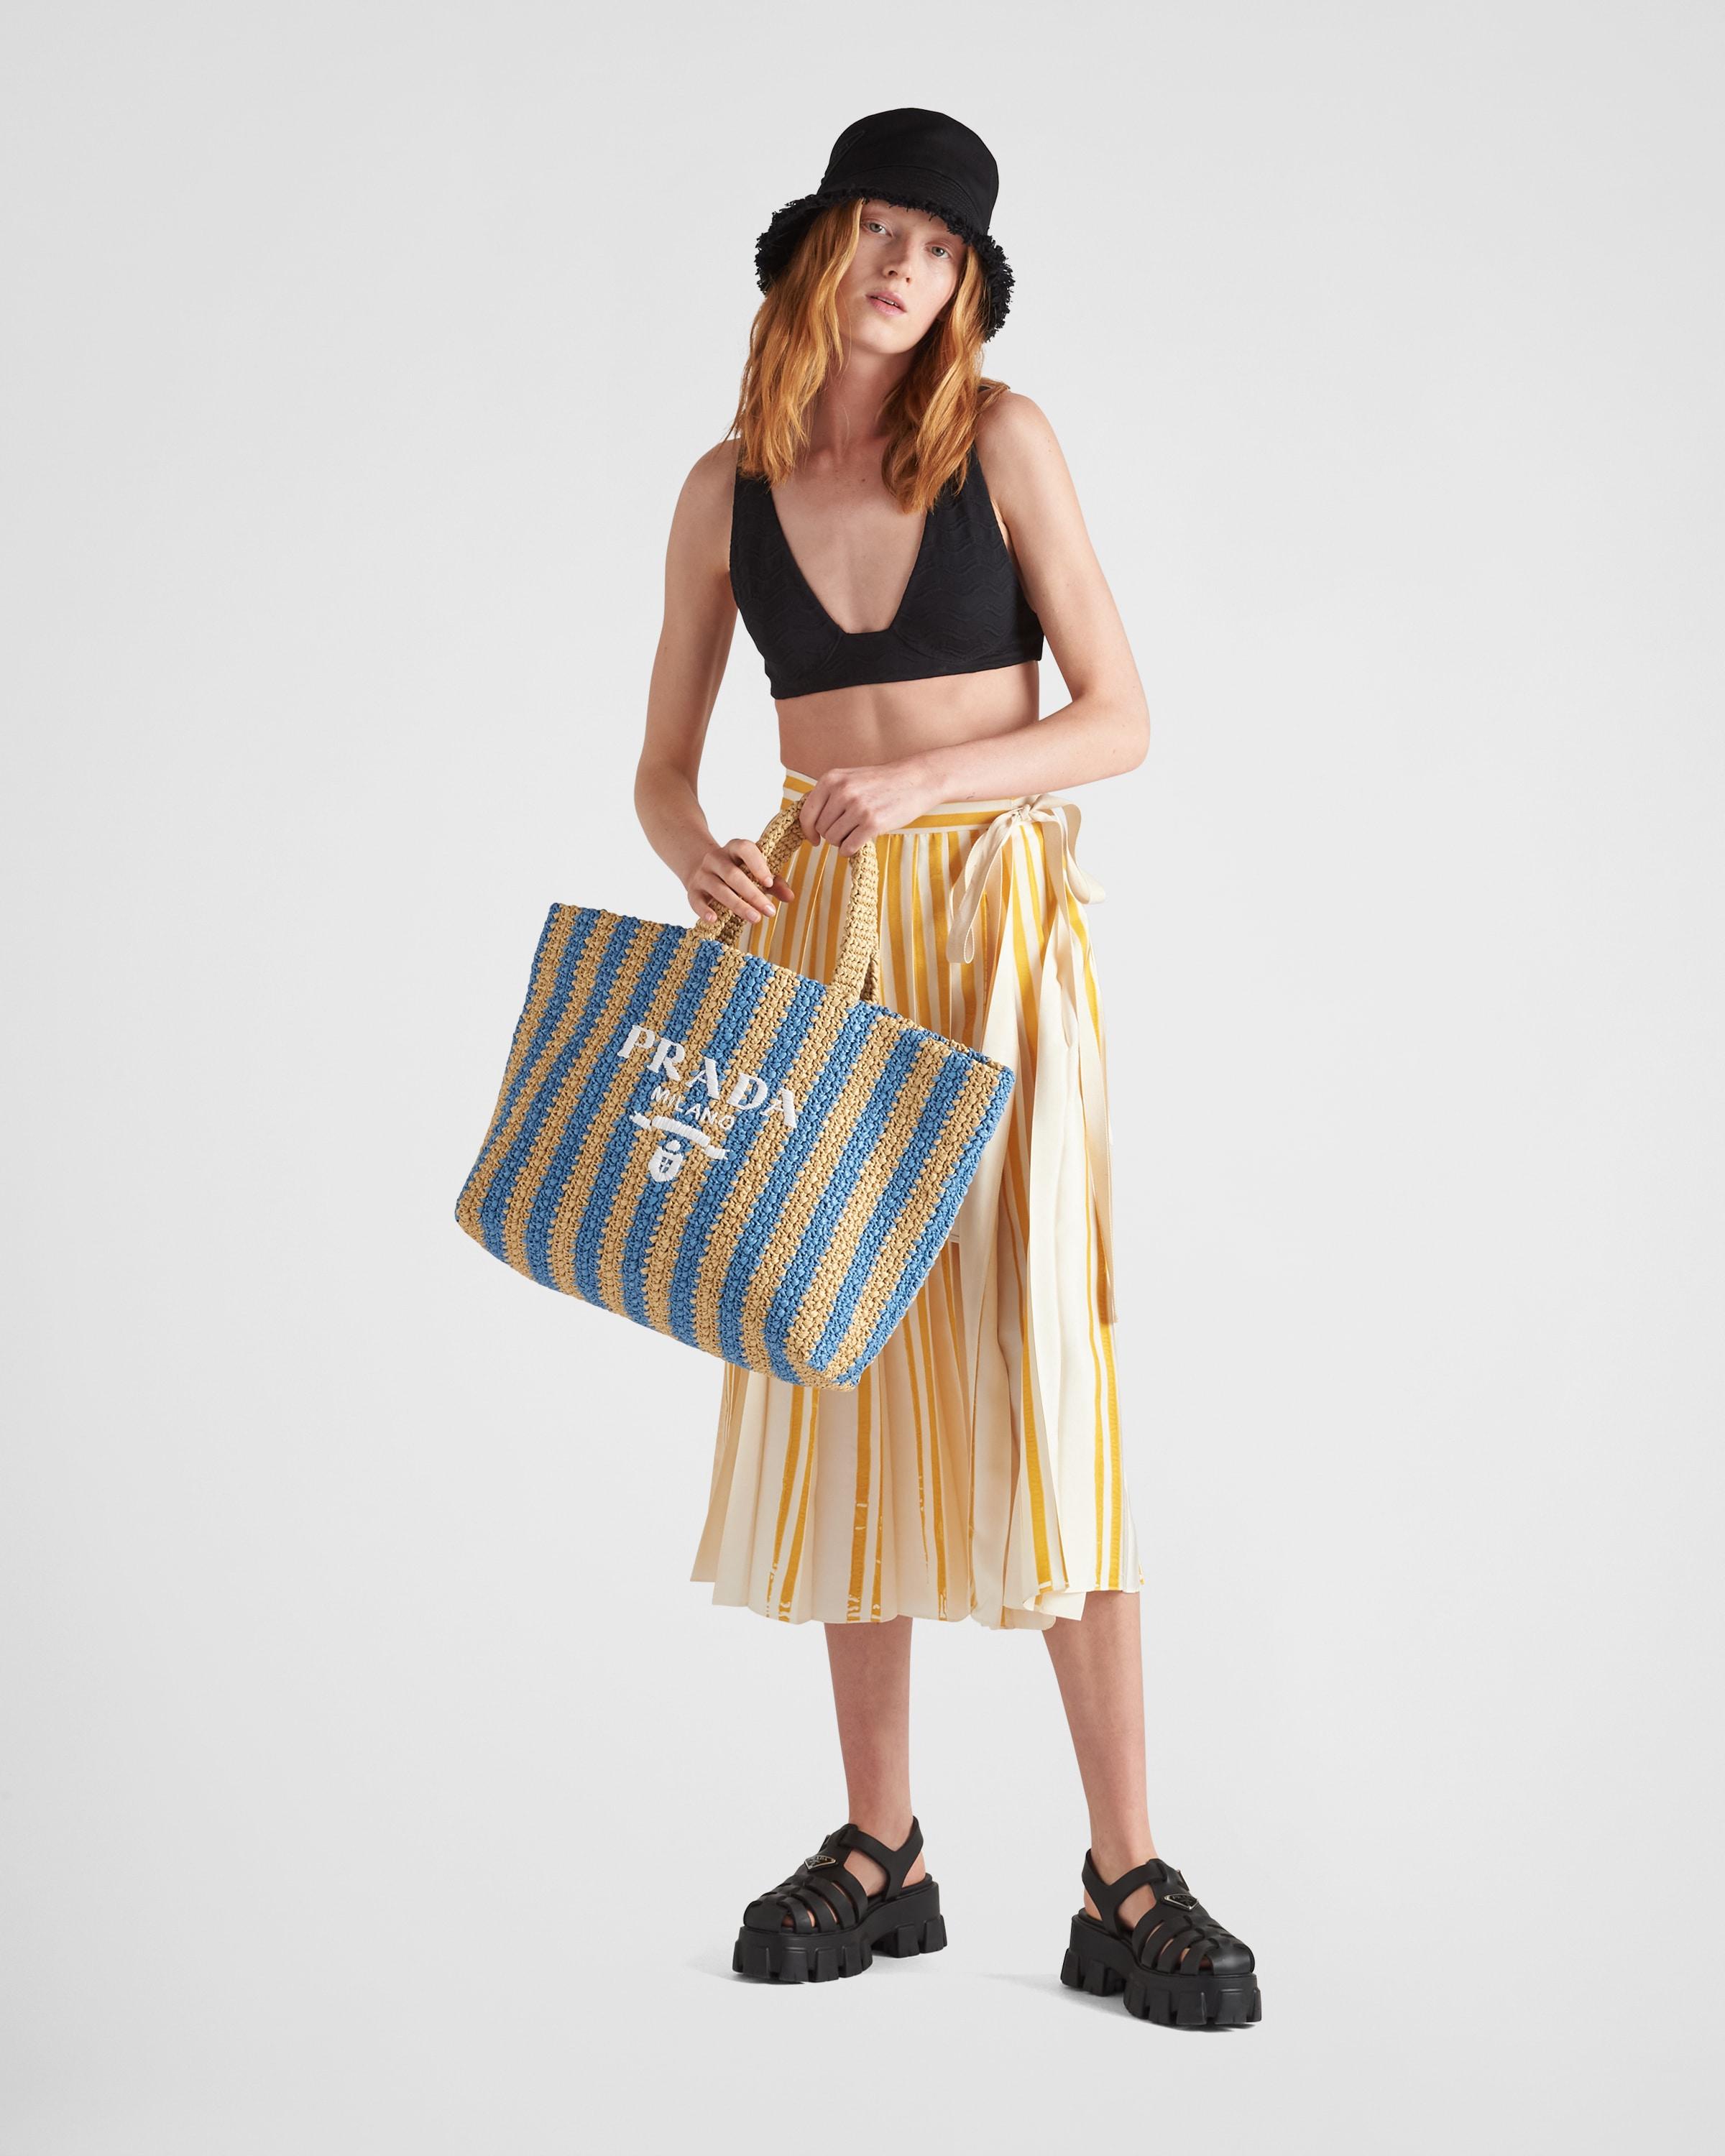 Shop Prada's Bright Blue Tote Bag